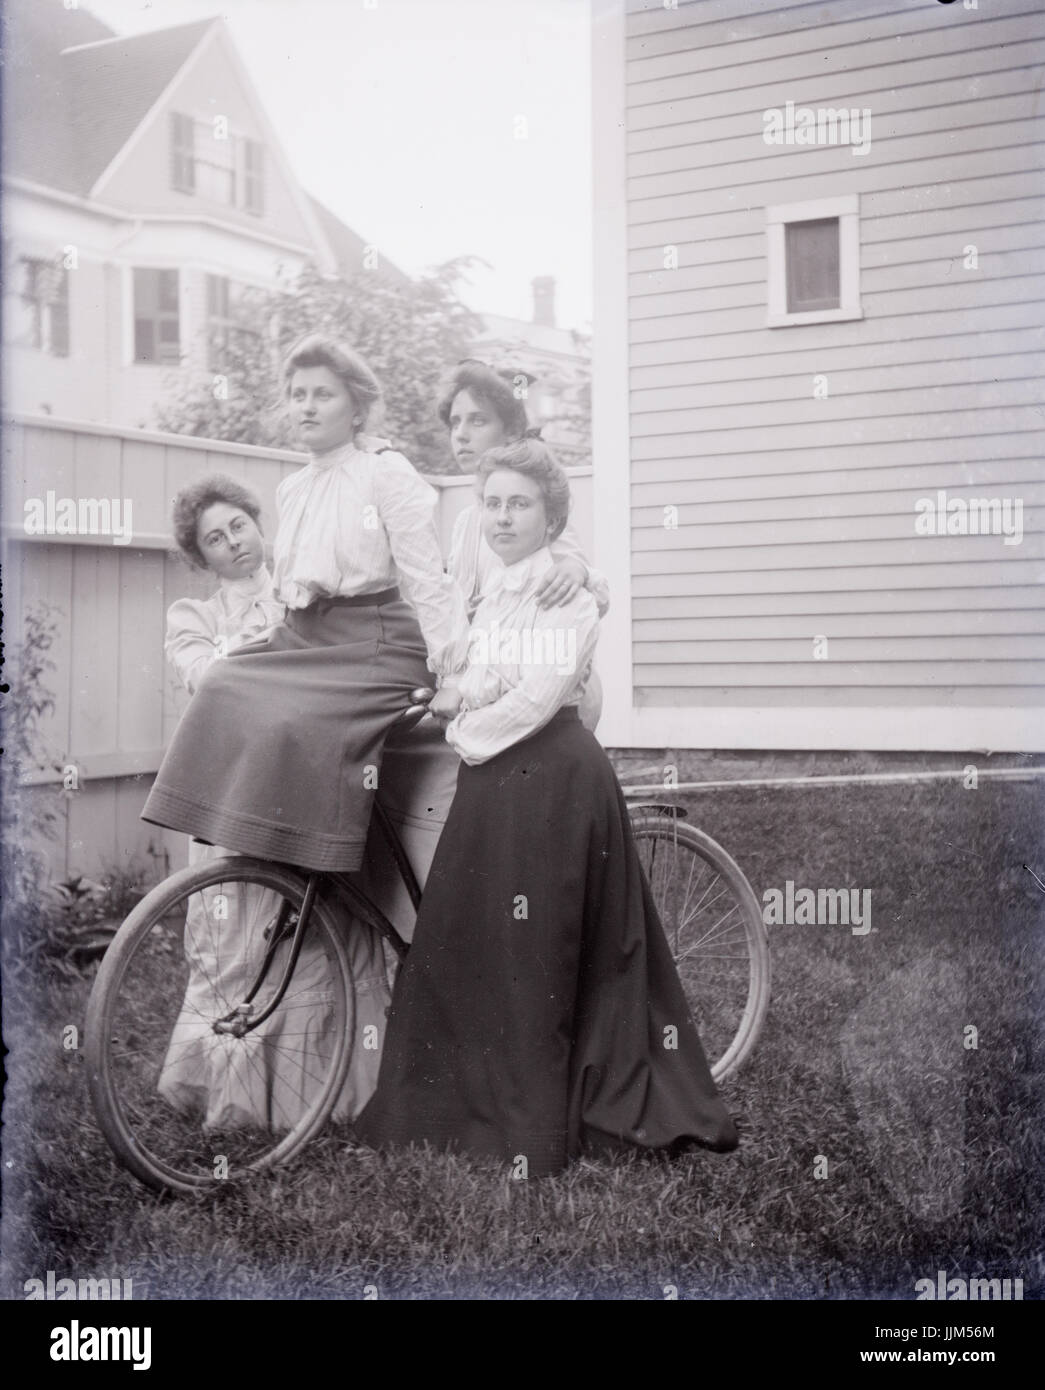 Antique c1910 fotografia, quattro donne su un antico bicicletta. Posizione sconosciuta, eventualmente Rhode Island, Stati Uniti d'America. Fonte: fotografia originale. Foto Stock